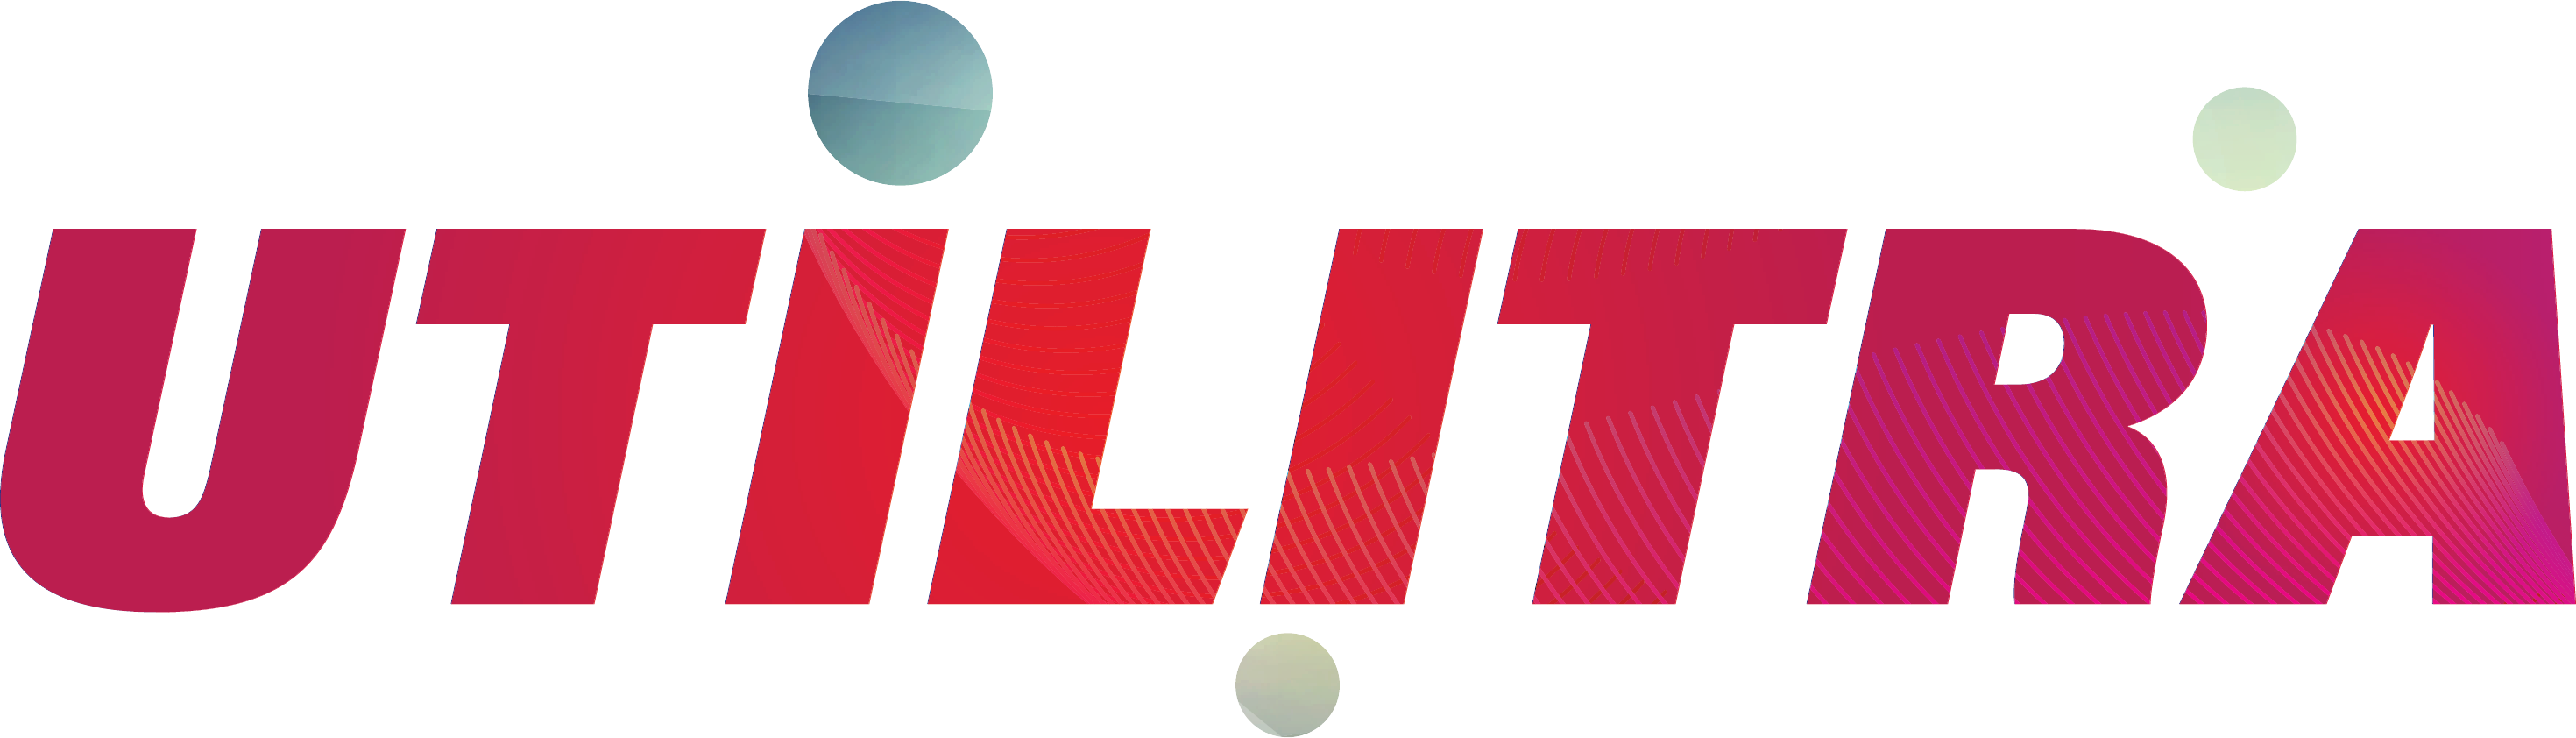 Utilitra Company Logo